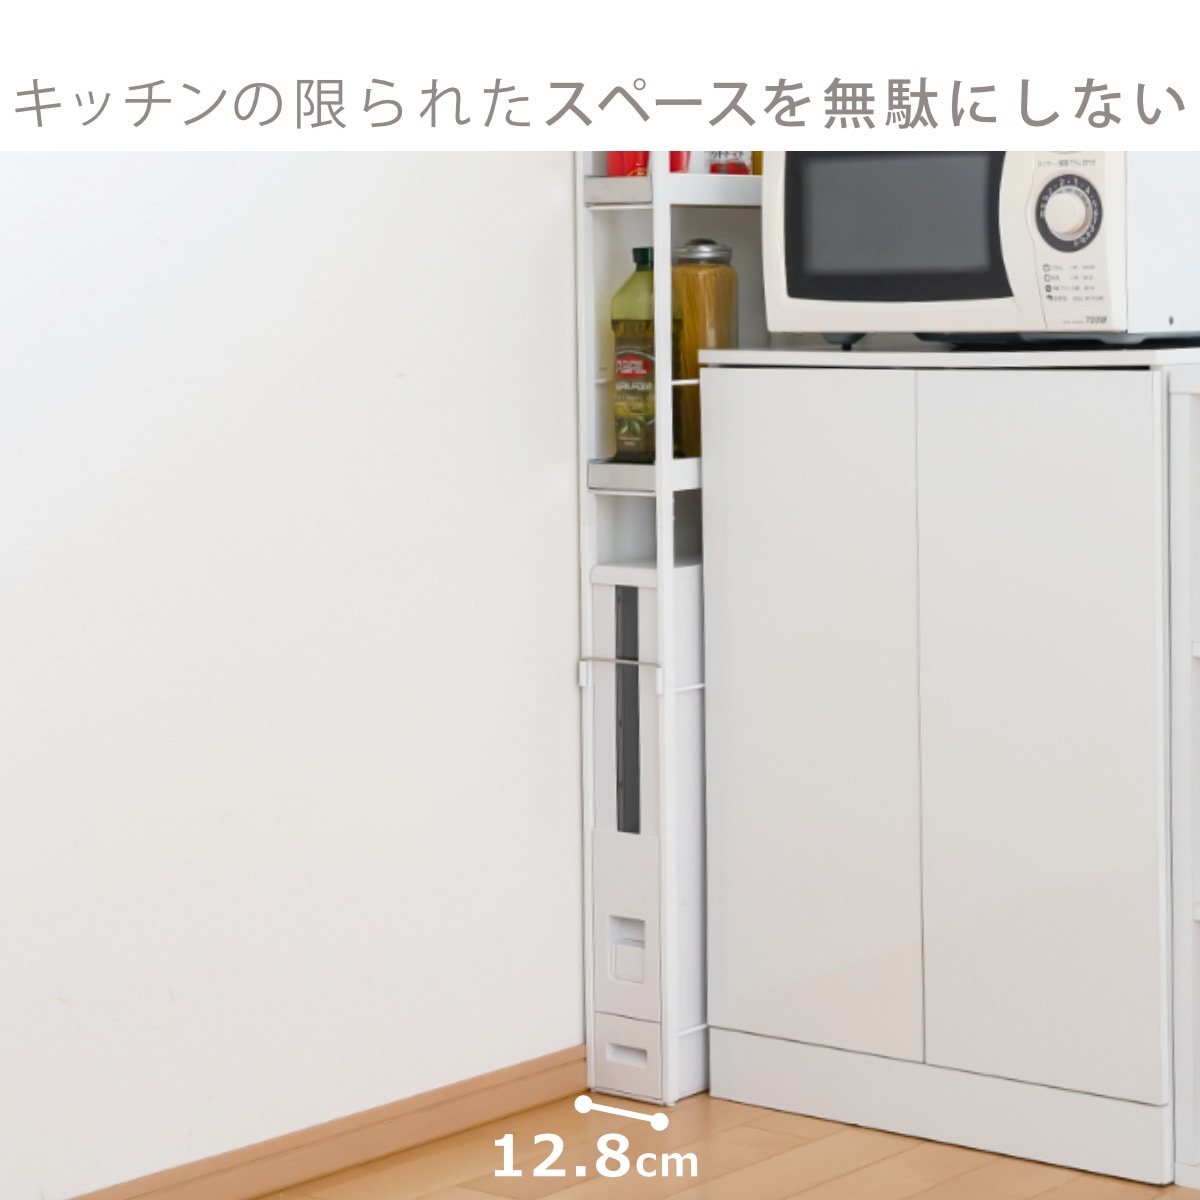 NEW在庫キッチン収納/キッチンワゴン 日本製 『米びつ付収納庫』 キッチン収納